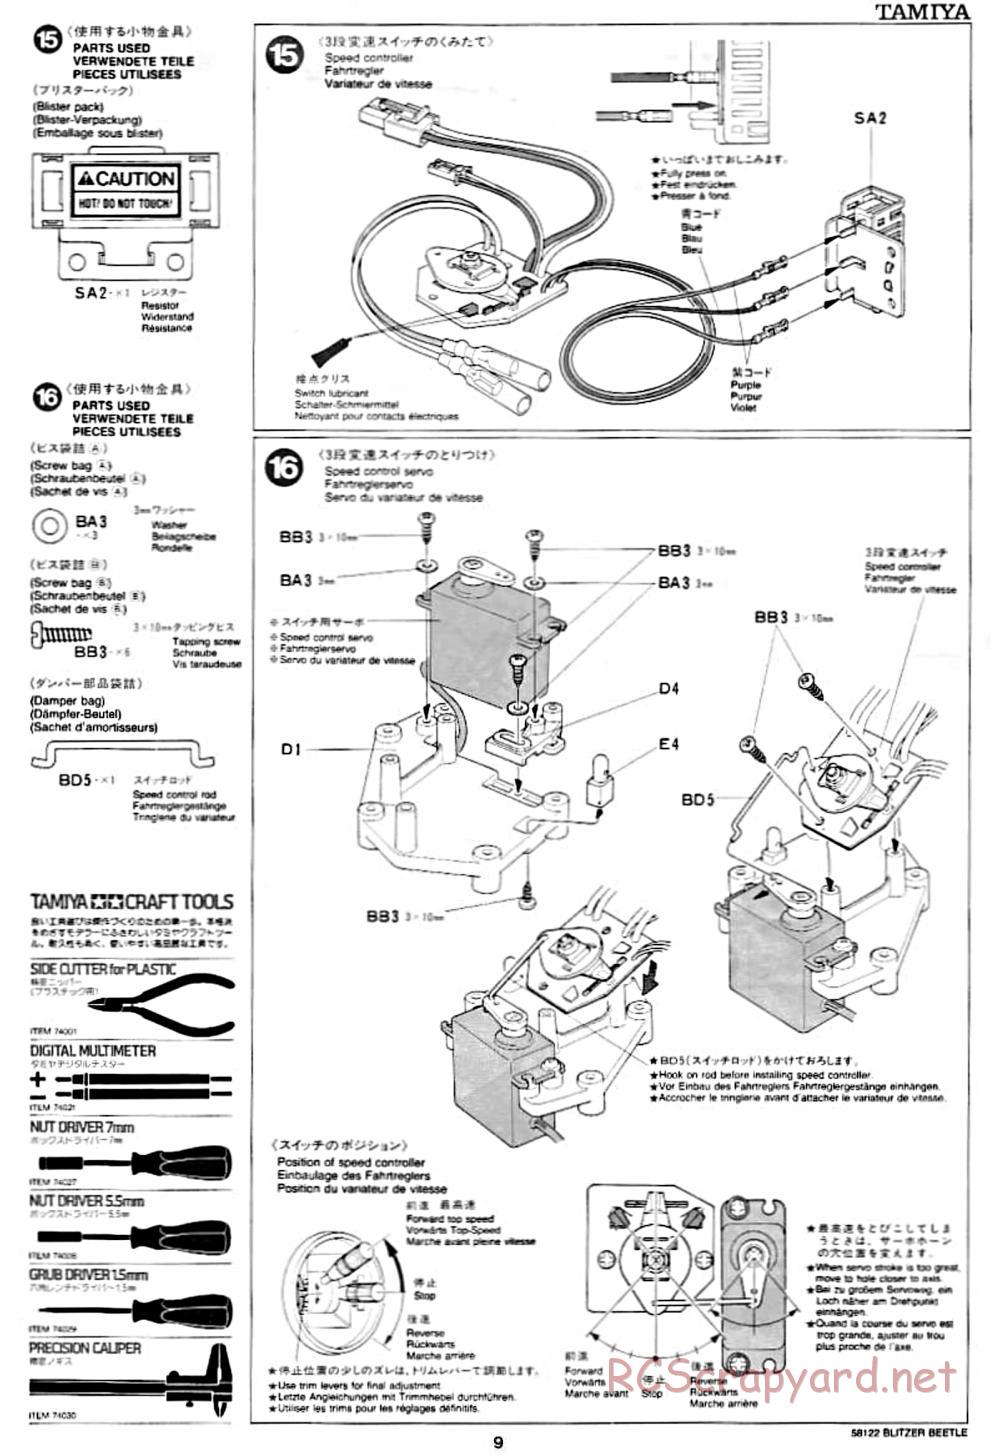 Tamiya - Blitzer Beetle Chassis - Manual - Page 9